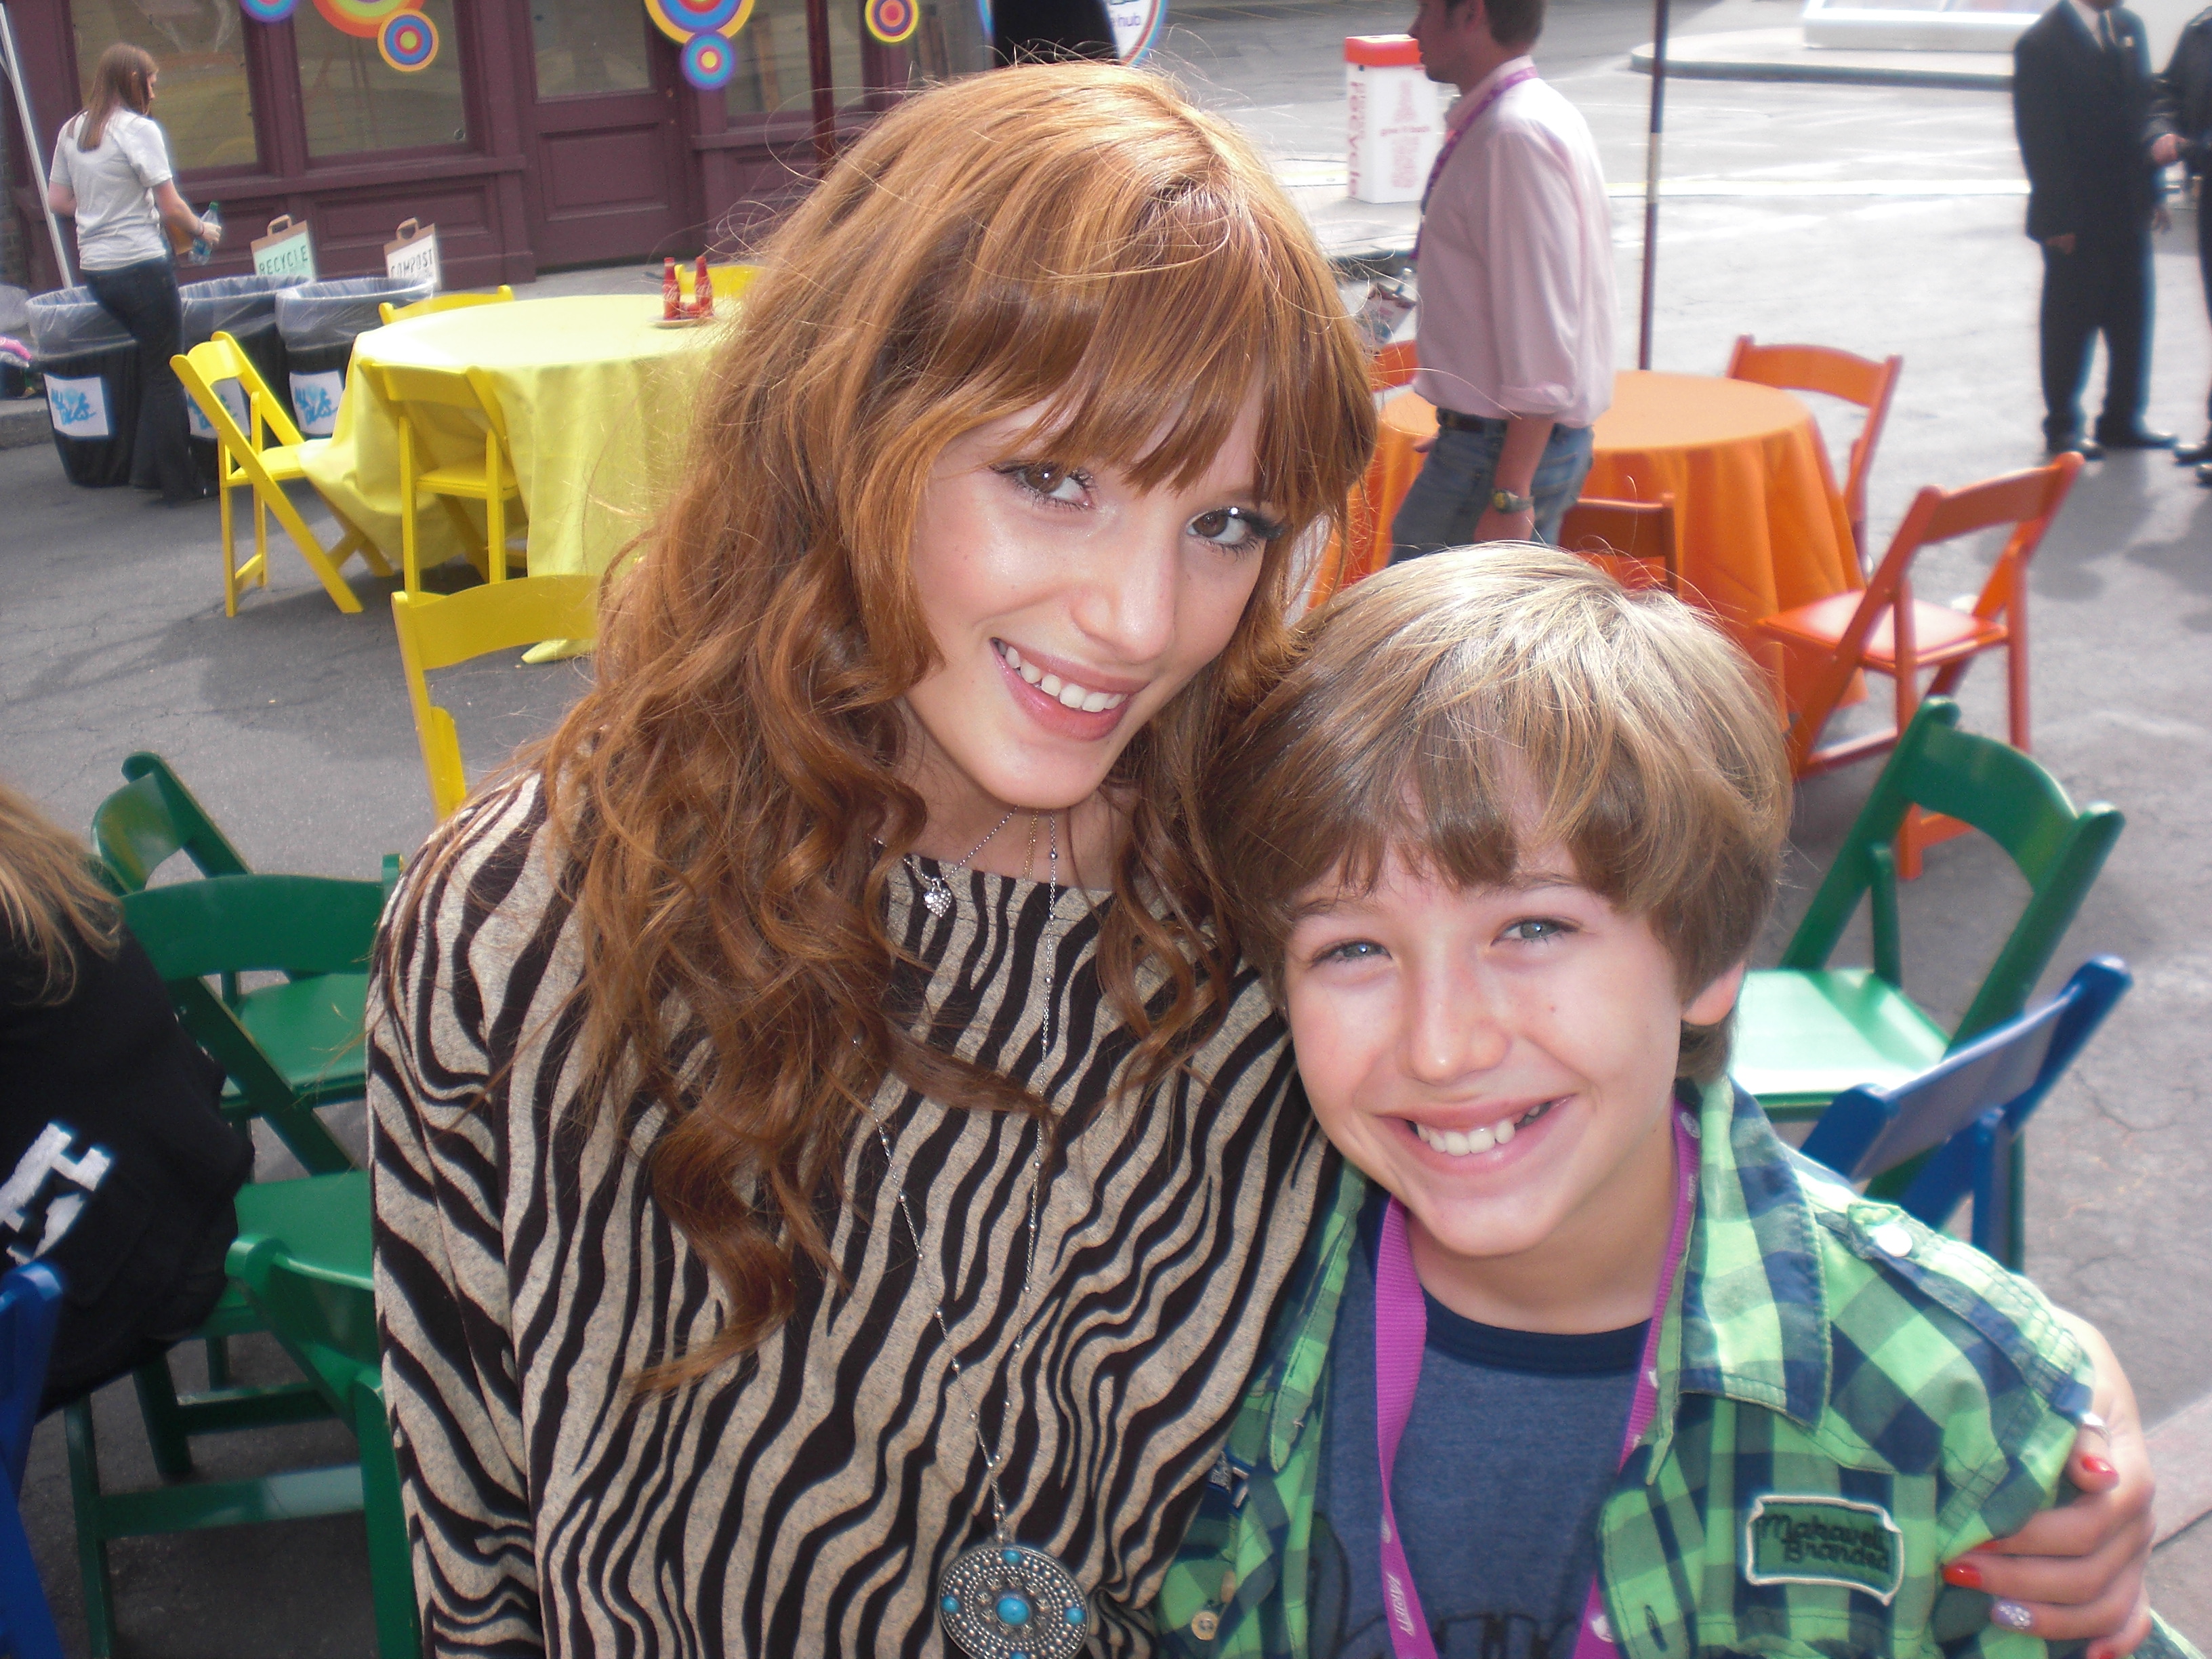 Garrett with Bella Thorne